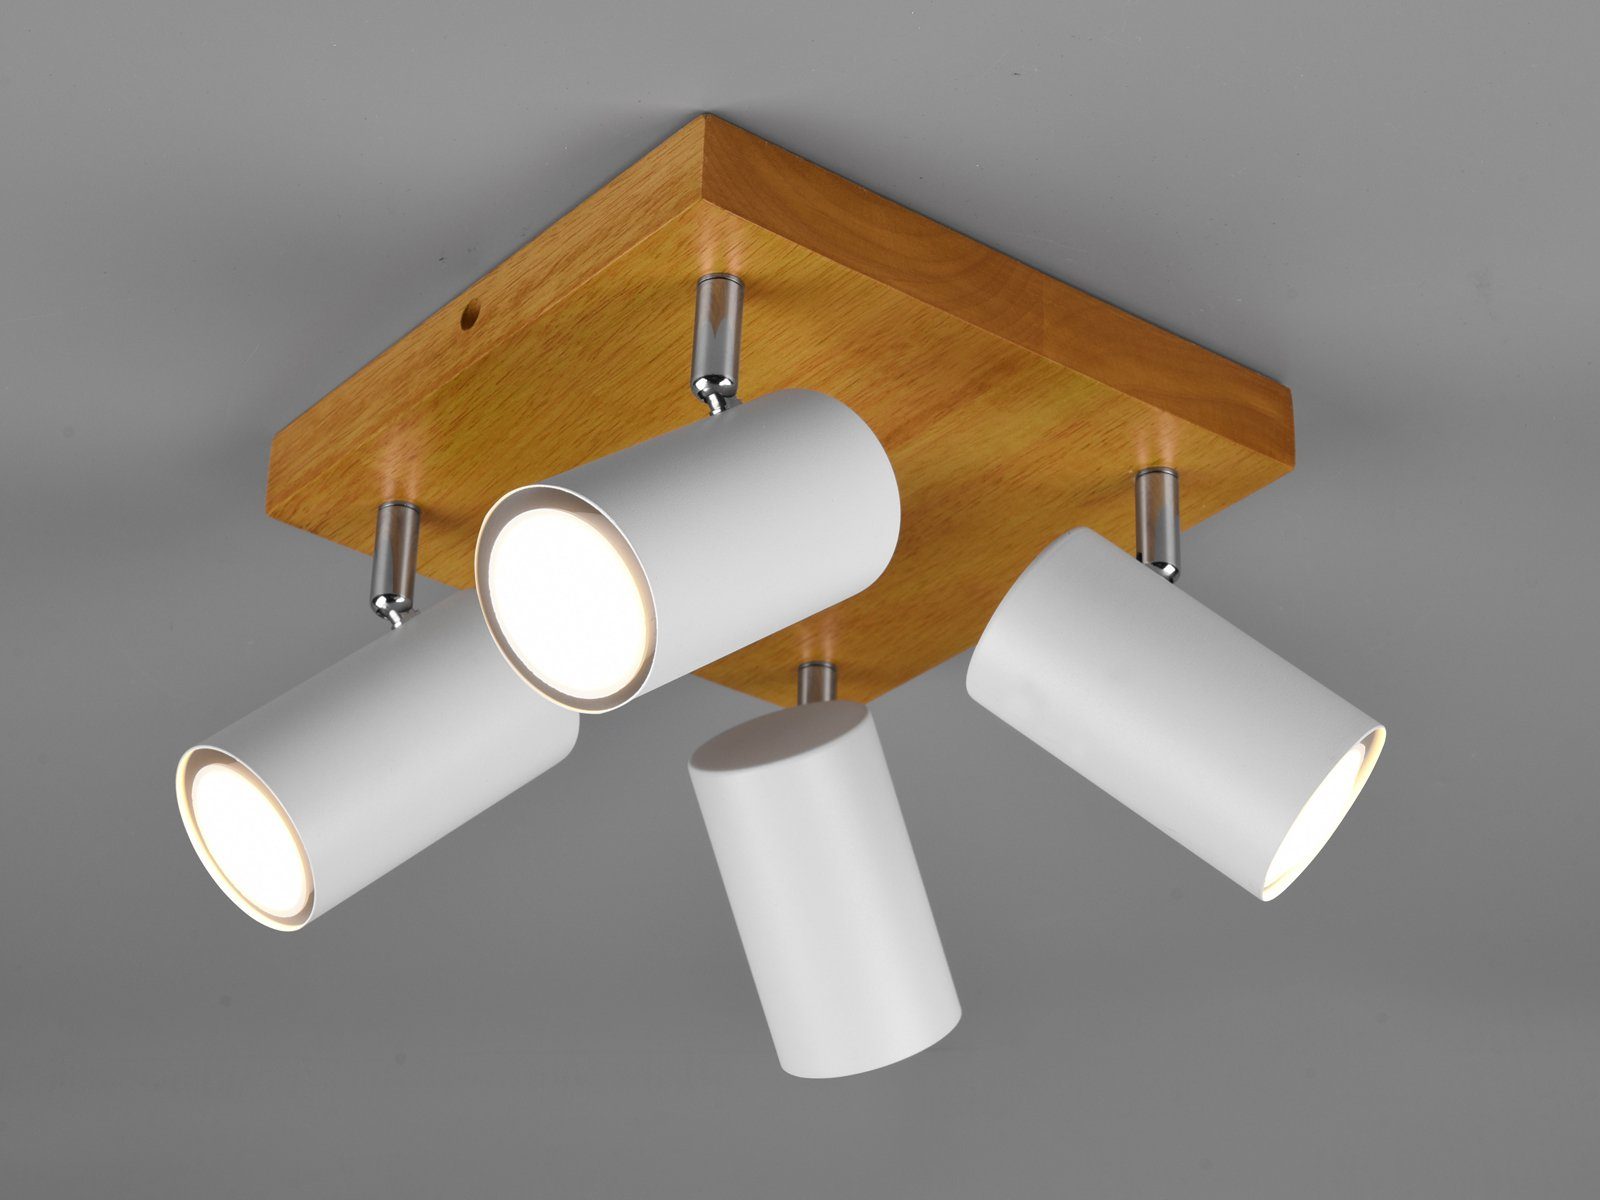 Weiß kleine Spotlampen innen Ø22cm wechselbar, meineWunschleuchte Holz-lampe Deckenstrahler, Dimmfunktion, Treppenhaus LED Balkenlampe matt LED Naturholz Warmweiß, / Decke